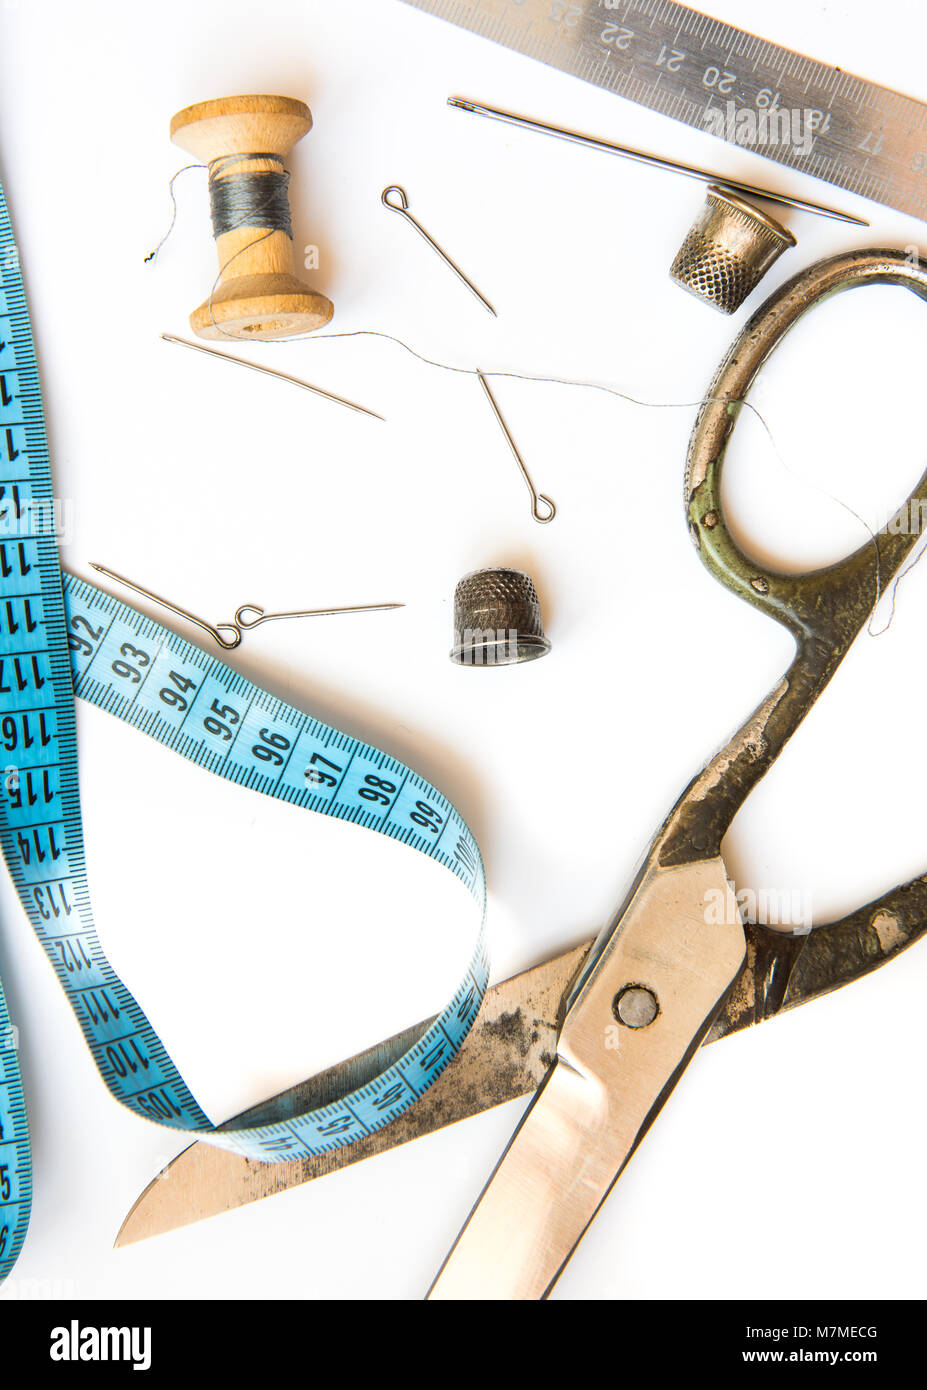 Vista aérea de viejas herramientas y accesorios de costura Foto de stock